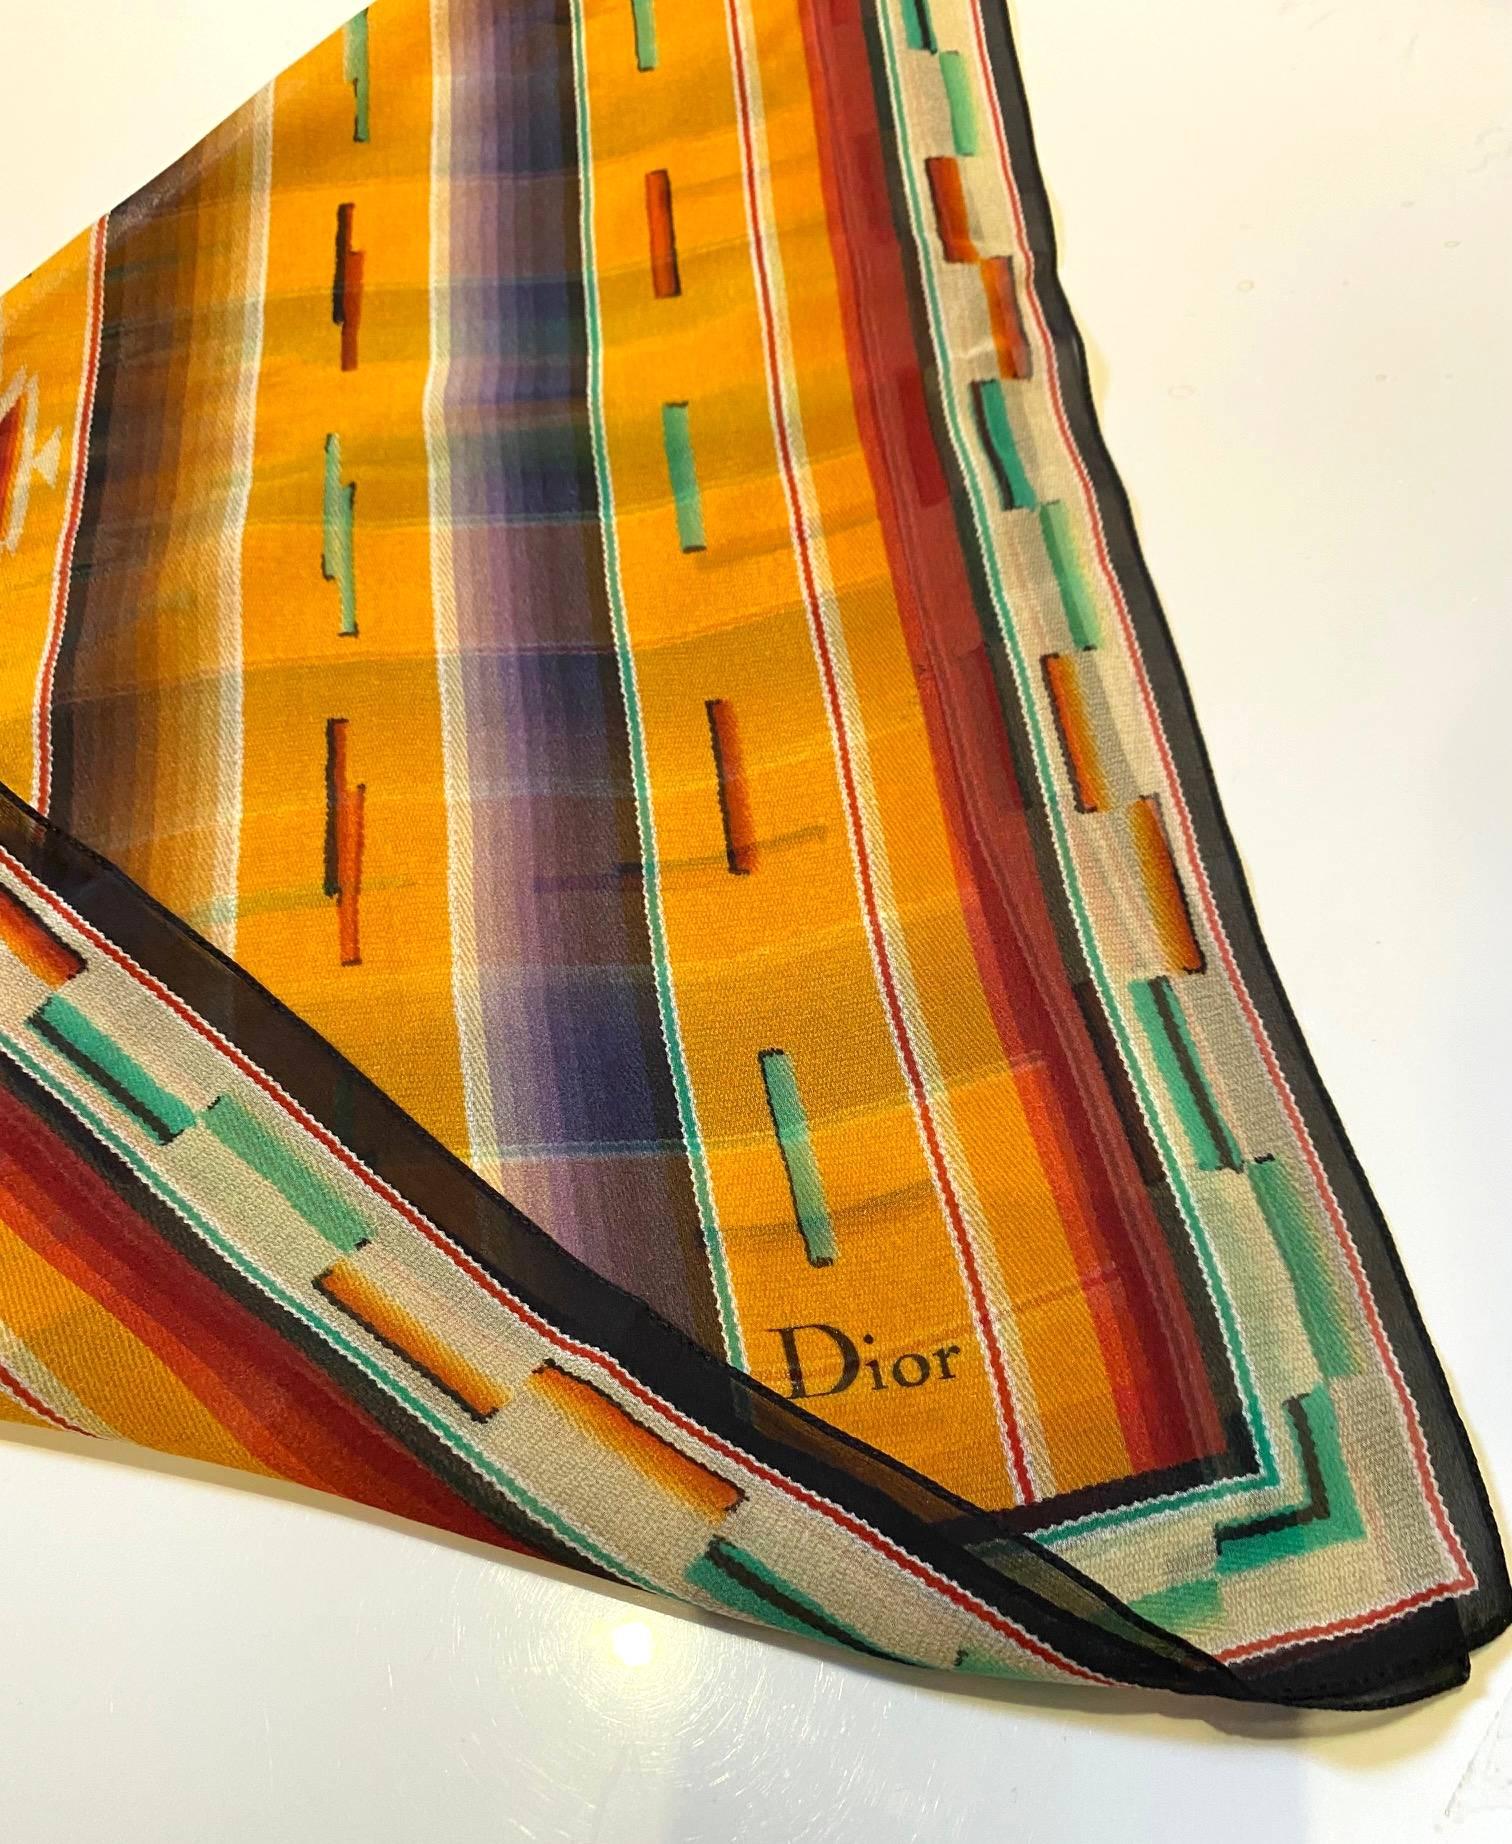 Dieser quadratische Schal von Christian Dior aus Seidencrêpe besticht durch seinen lebendigen Azteken-Print auf orangefarbenem Grund. Er besticht durch seinen scharfen, fesselnden Look. Mit Liebe in Italien hergestellt.

Zustand: 2000er Jahre, sehr